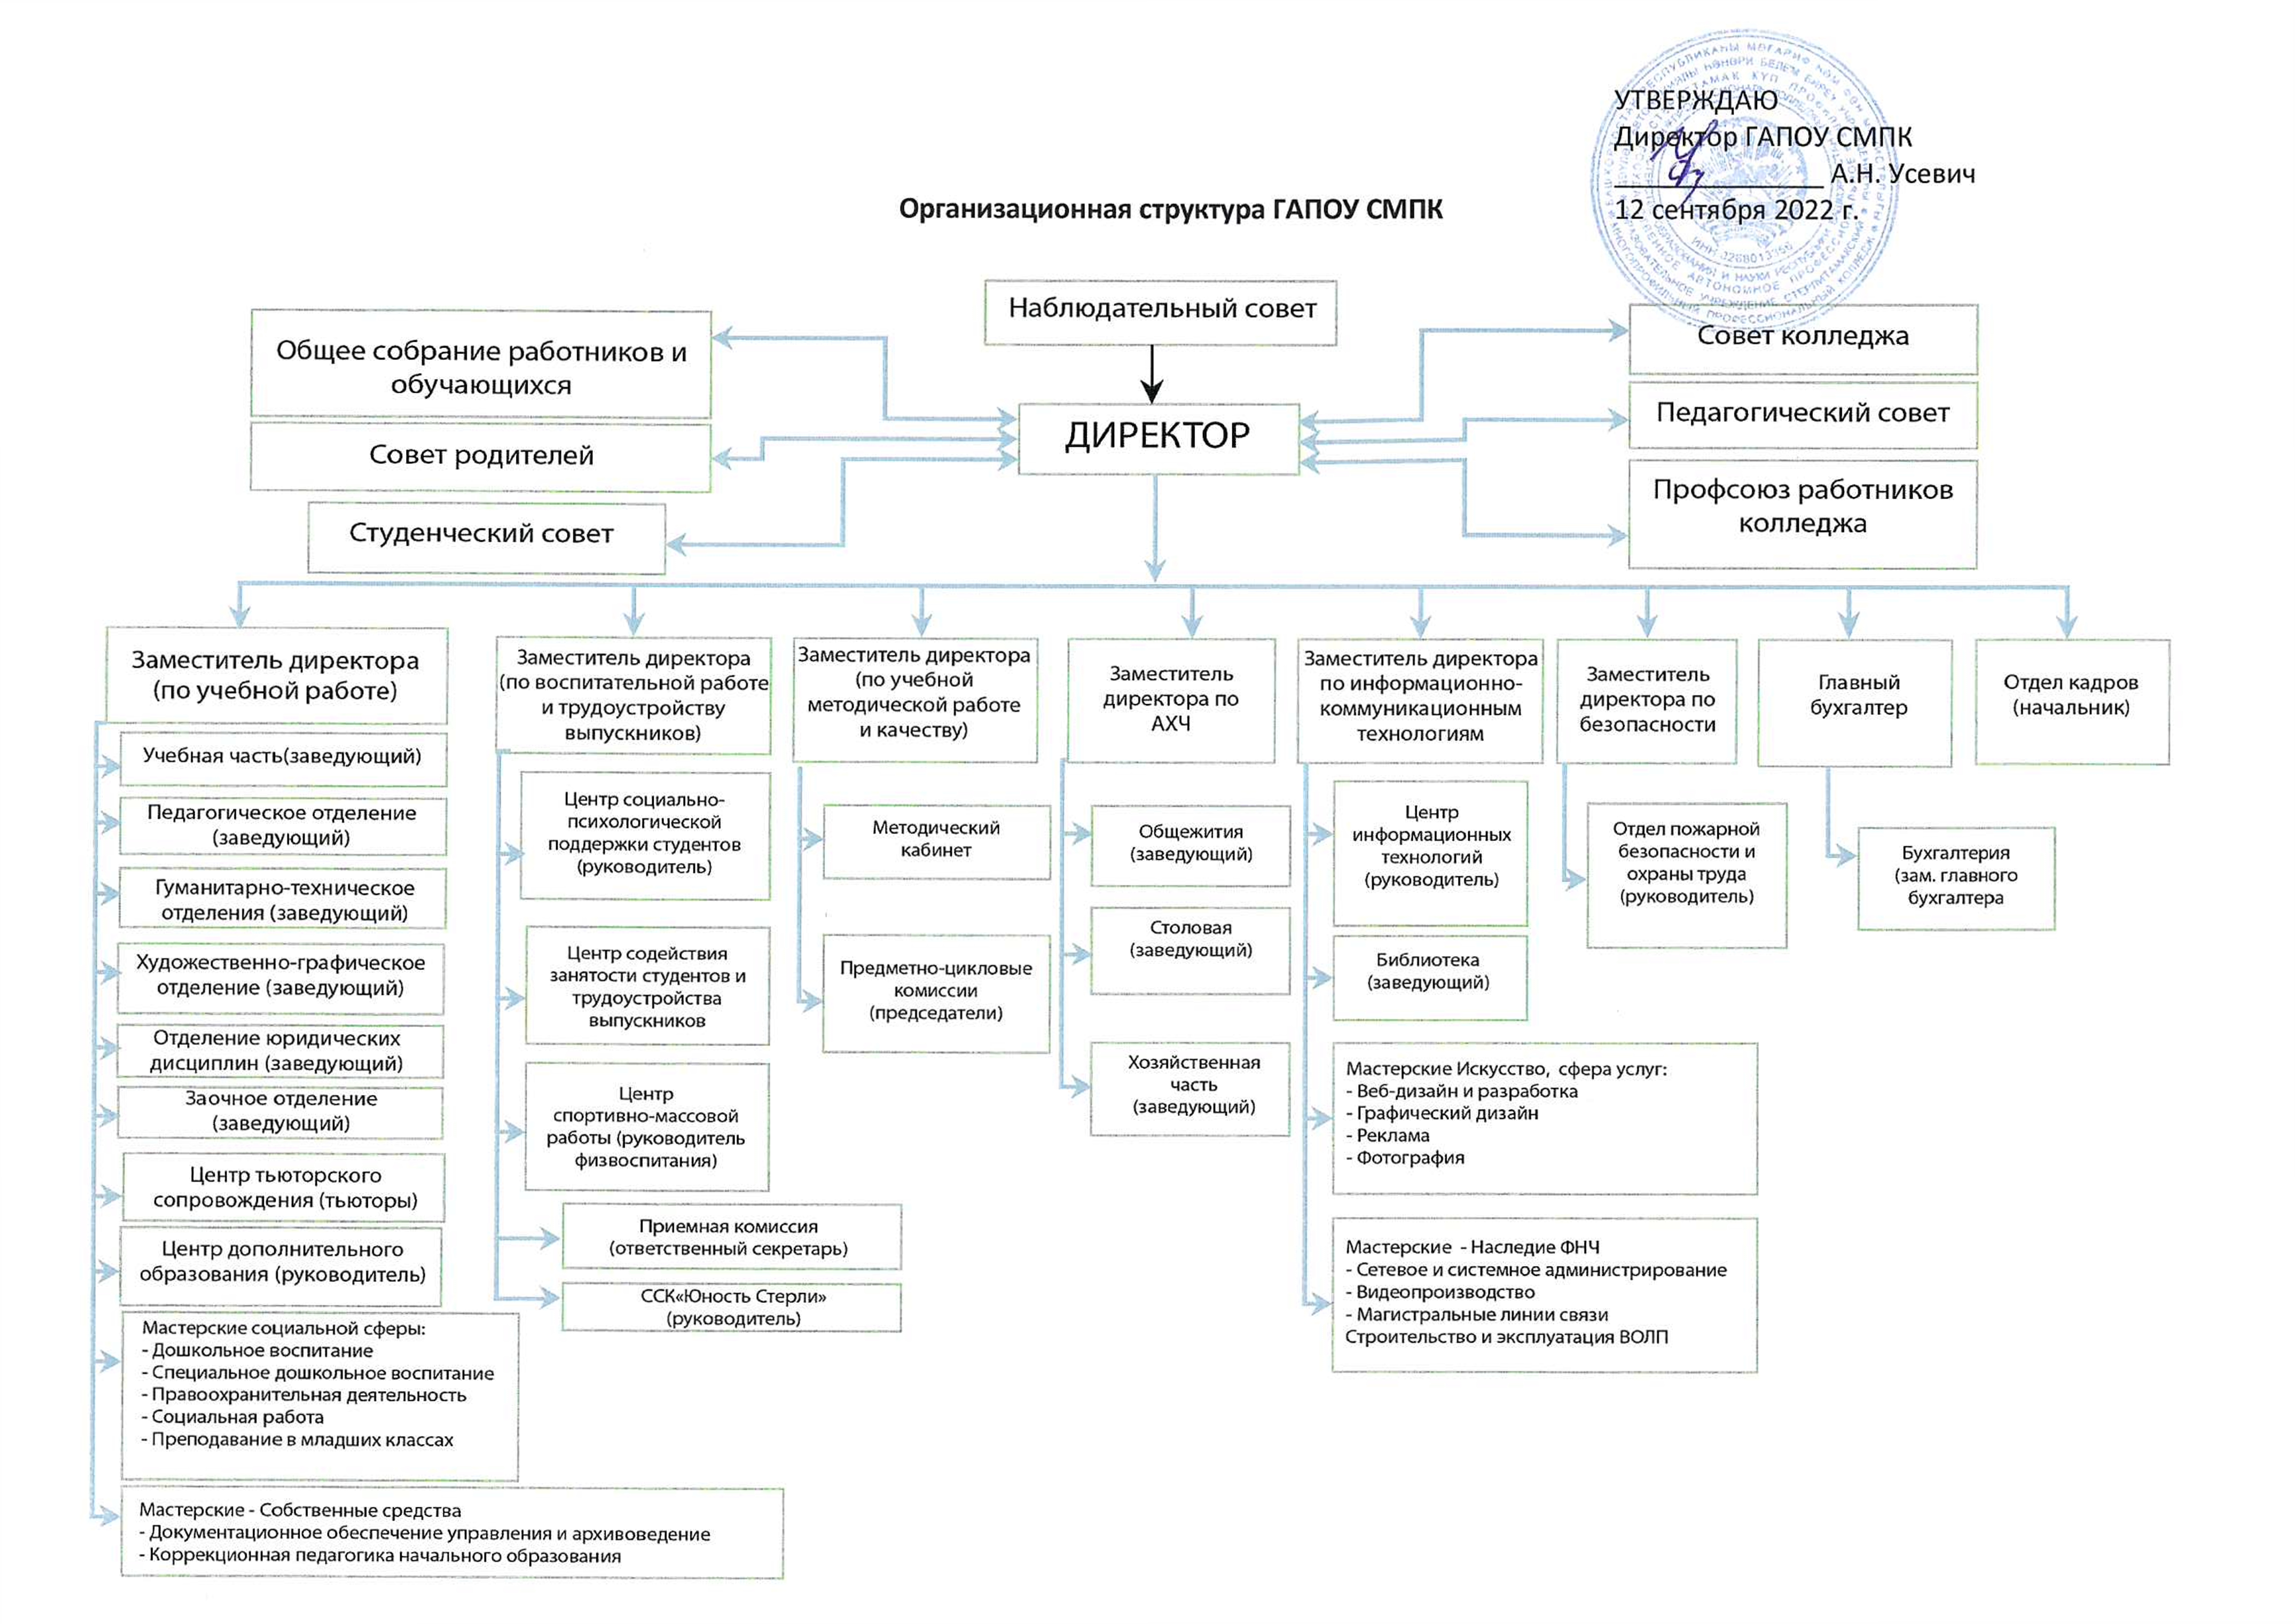 Организационная структура ГАПОУ СМПК